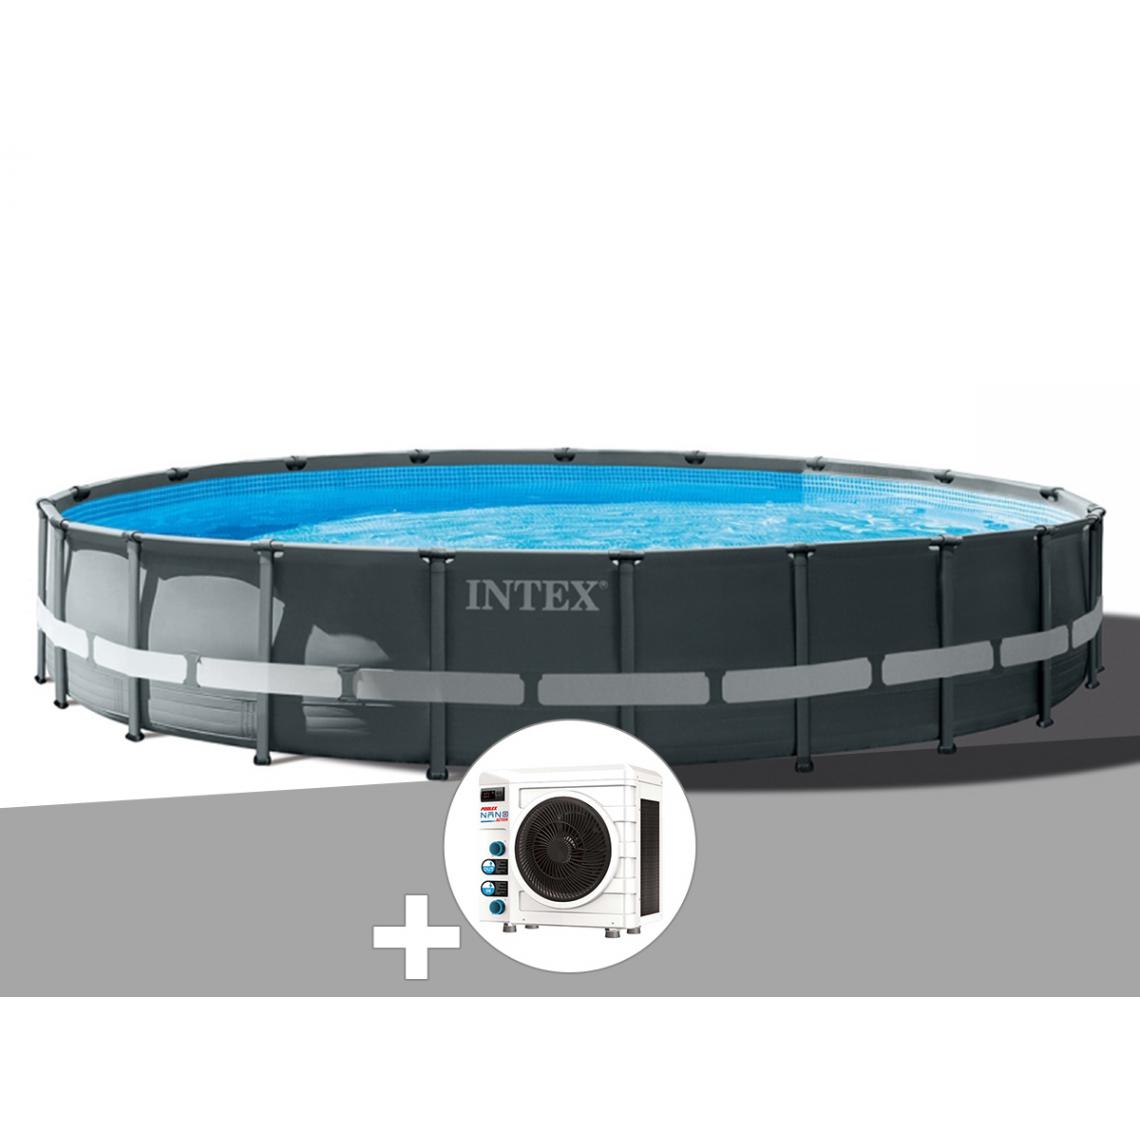 Intex - Kit piscine tubulaire Intex Ultra XTR Frame ronde 6,10 x 1,22 m + Pompe à chaleur - Piscine Tubulaire